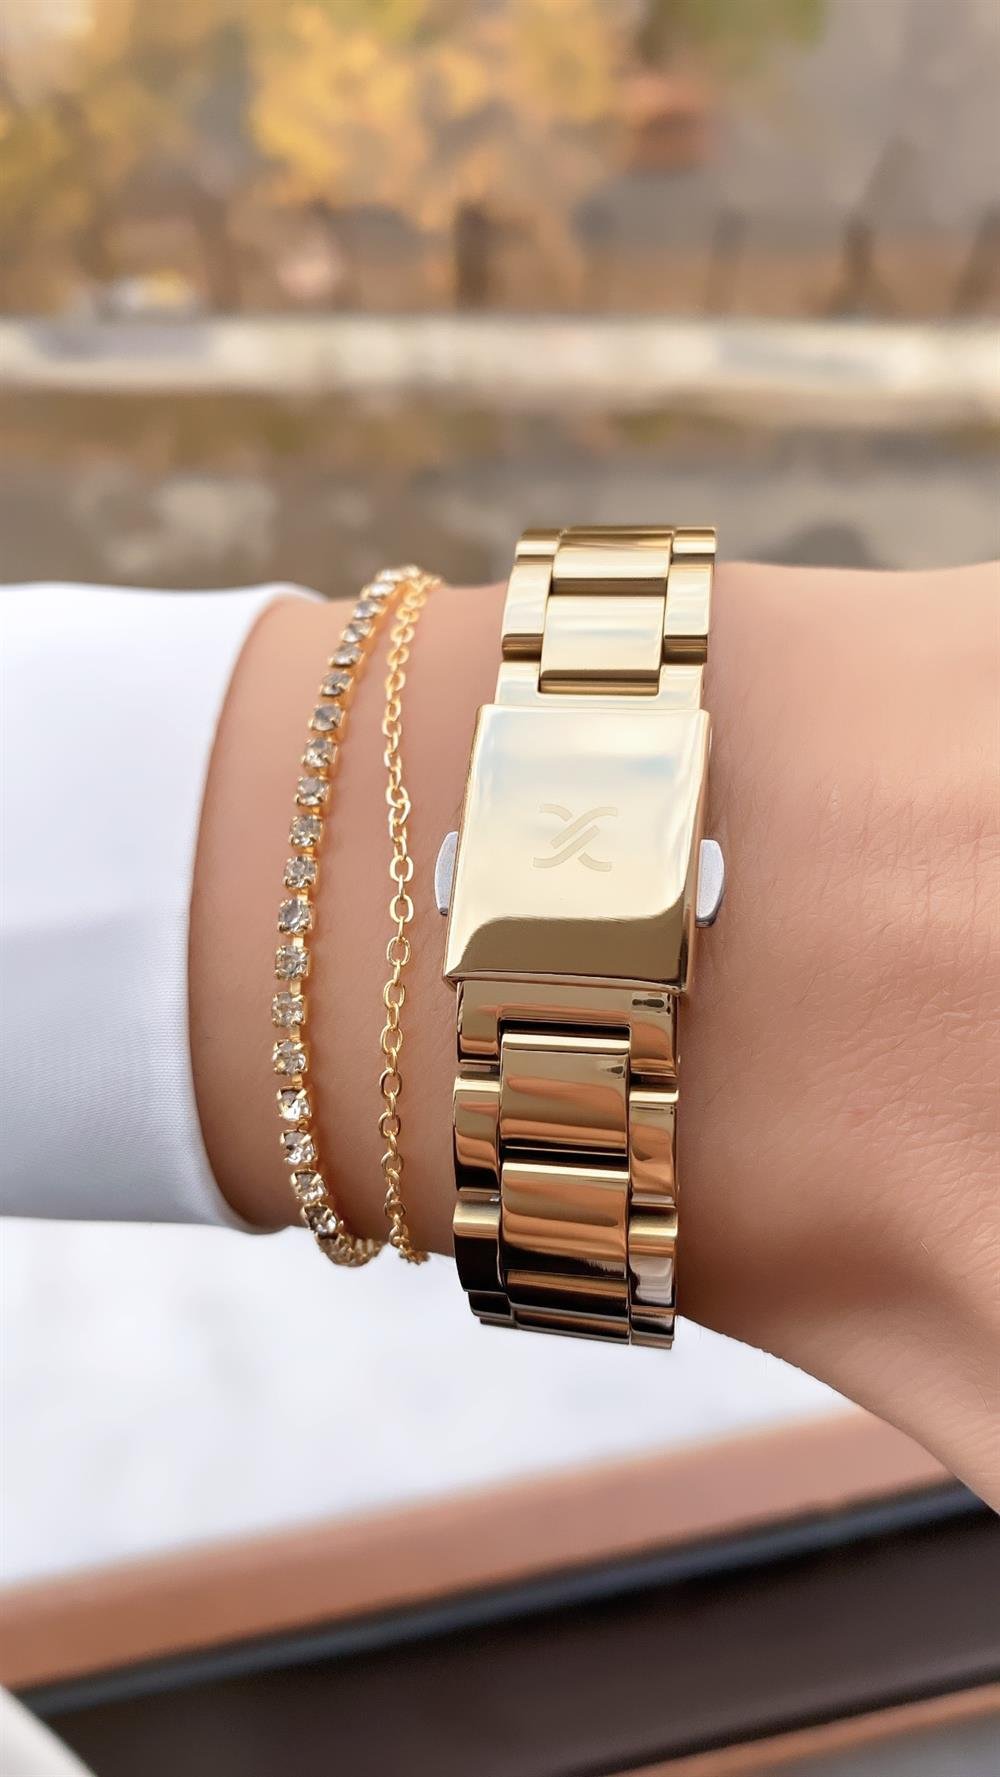 Daniel Klein kadın altın renk kol saati + Bileklik hediyeli